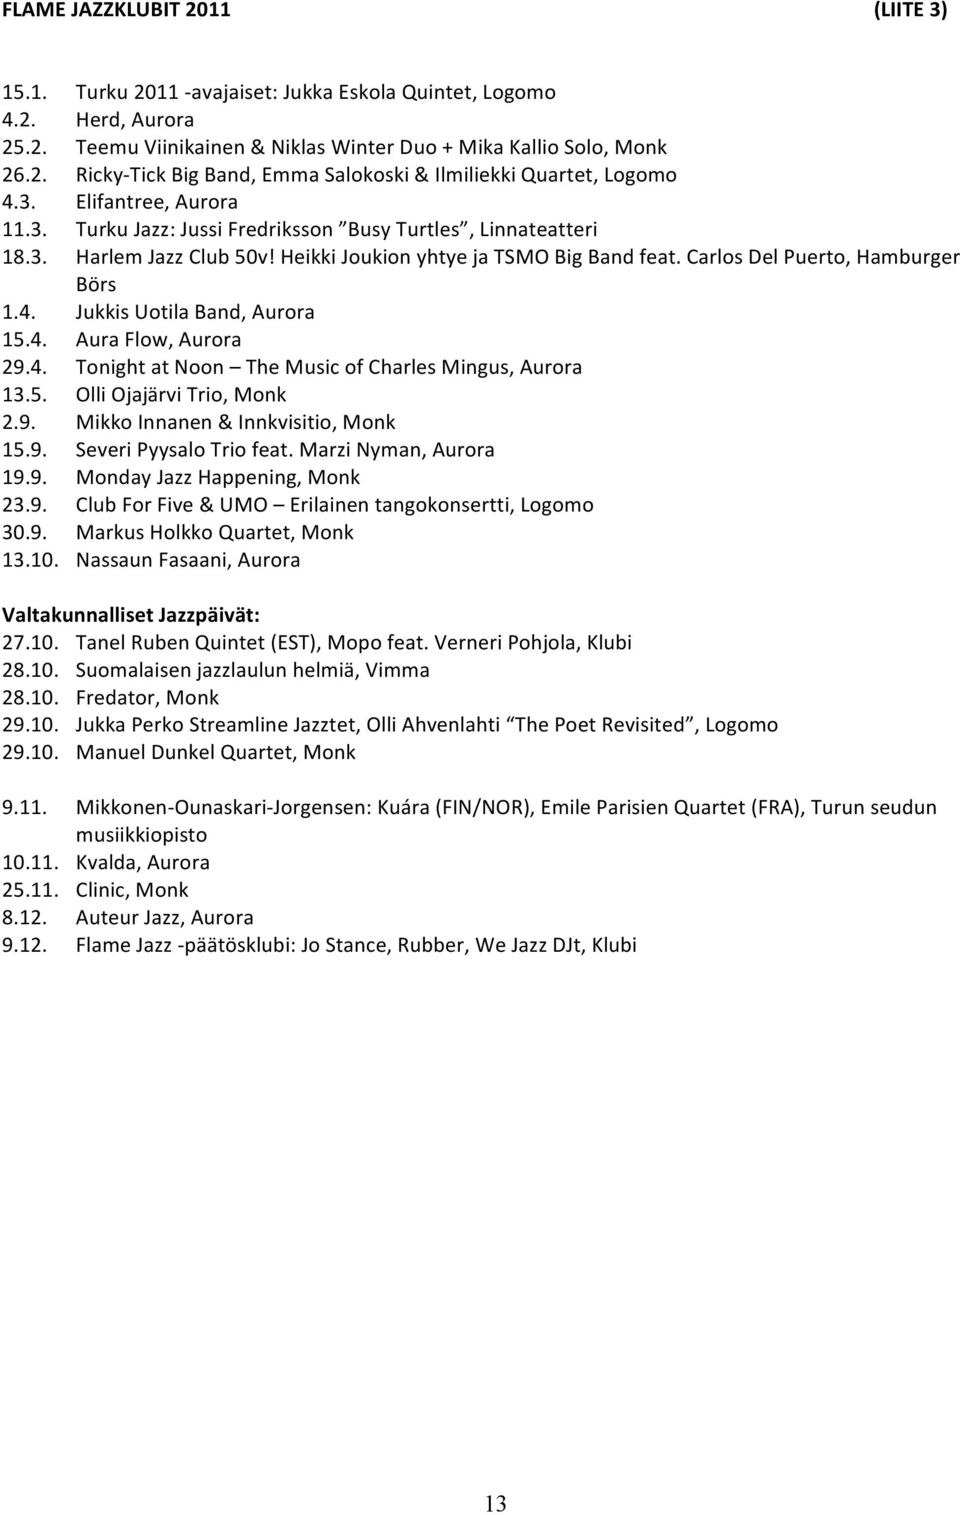 Jukkis Uotila Band, Aurora 15.4. Aura Flow, Aurora 29.4. Tonight at Noon The Music of Charles Mingus, Aurora 13.5. Olli Ojajärvi Trio, Monk 2.9. Mikko Innanen & Innkvisitio, Monk 15.9. Severi Pyysalo Trio feat.